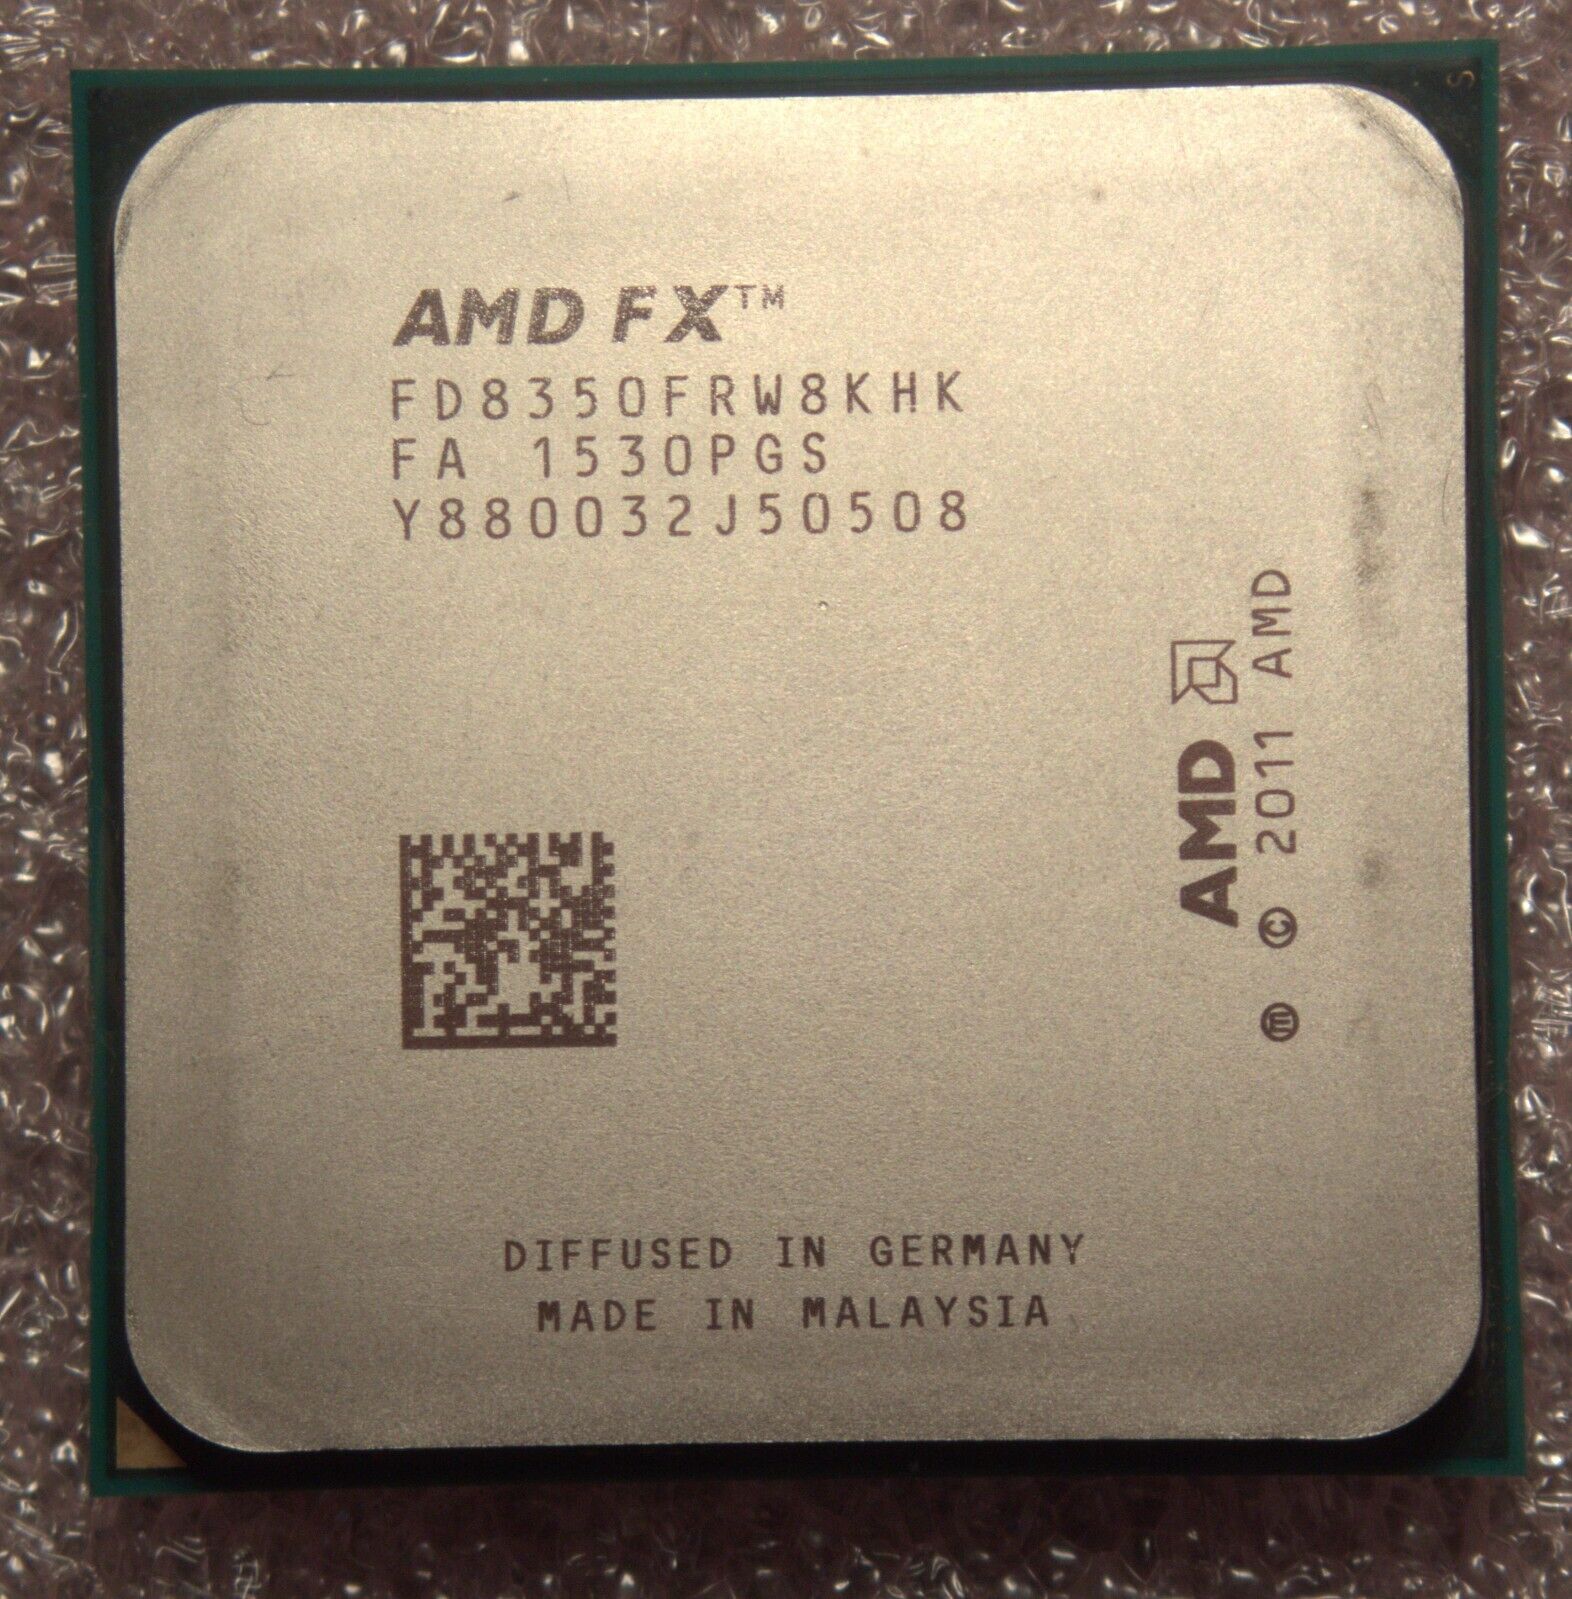 AMD FX-8350 CPU AM3 (FD8350FRW8KHK) 